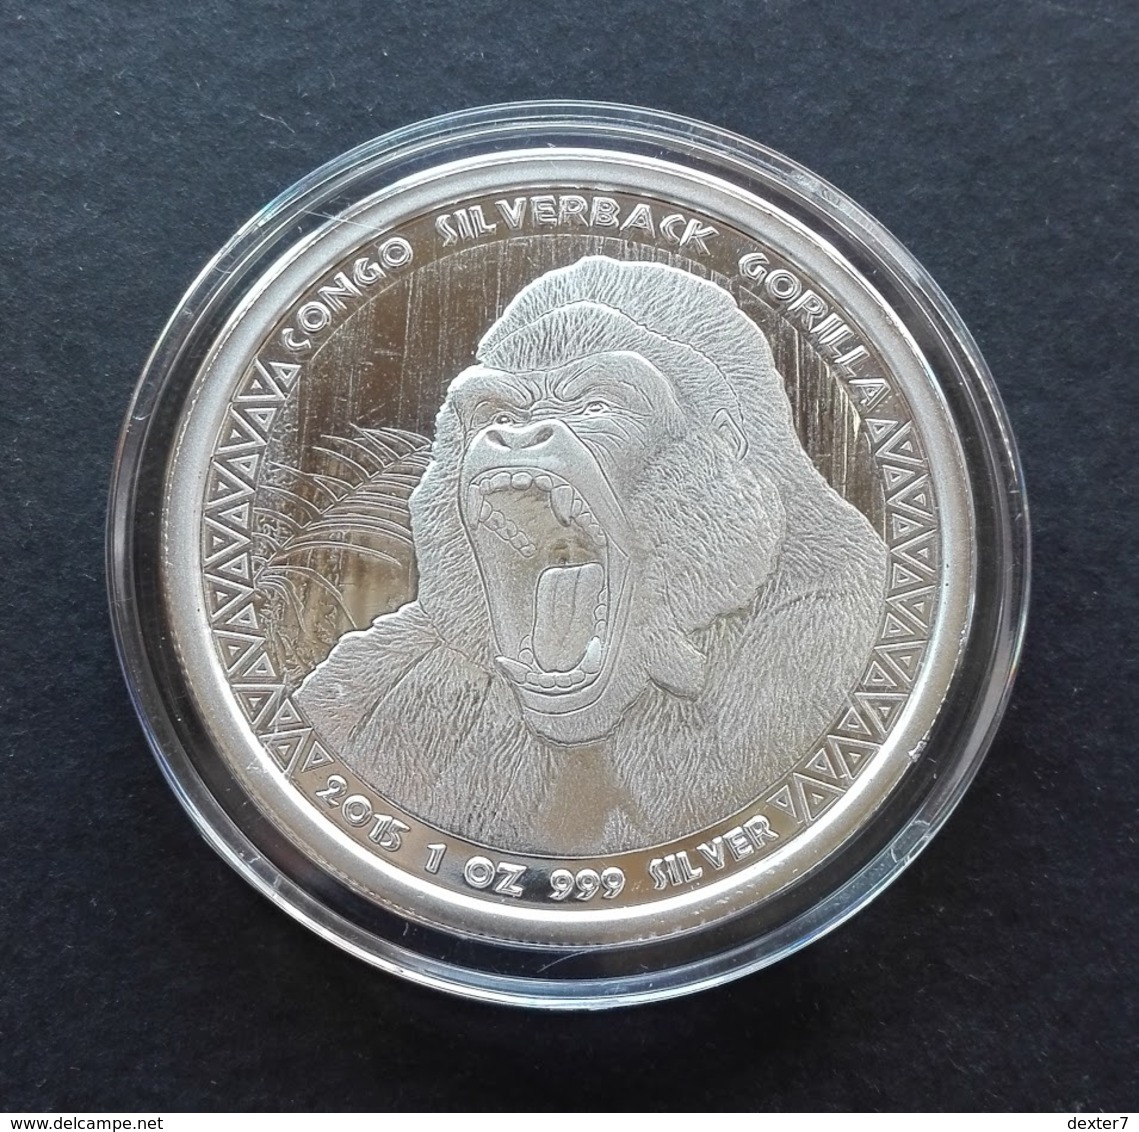 Congo, Gorilla 1 Oz 2015 Silver 999 Pure - 1 Oncia Argento Puro Bullion Scottsdale Mint - Congo (Repubblica Democratica 1998)